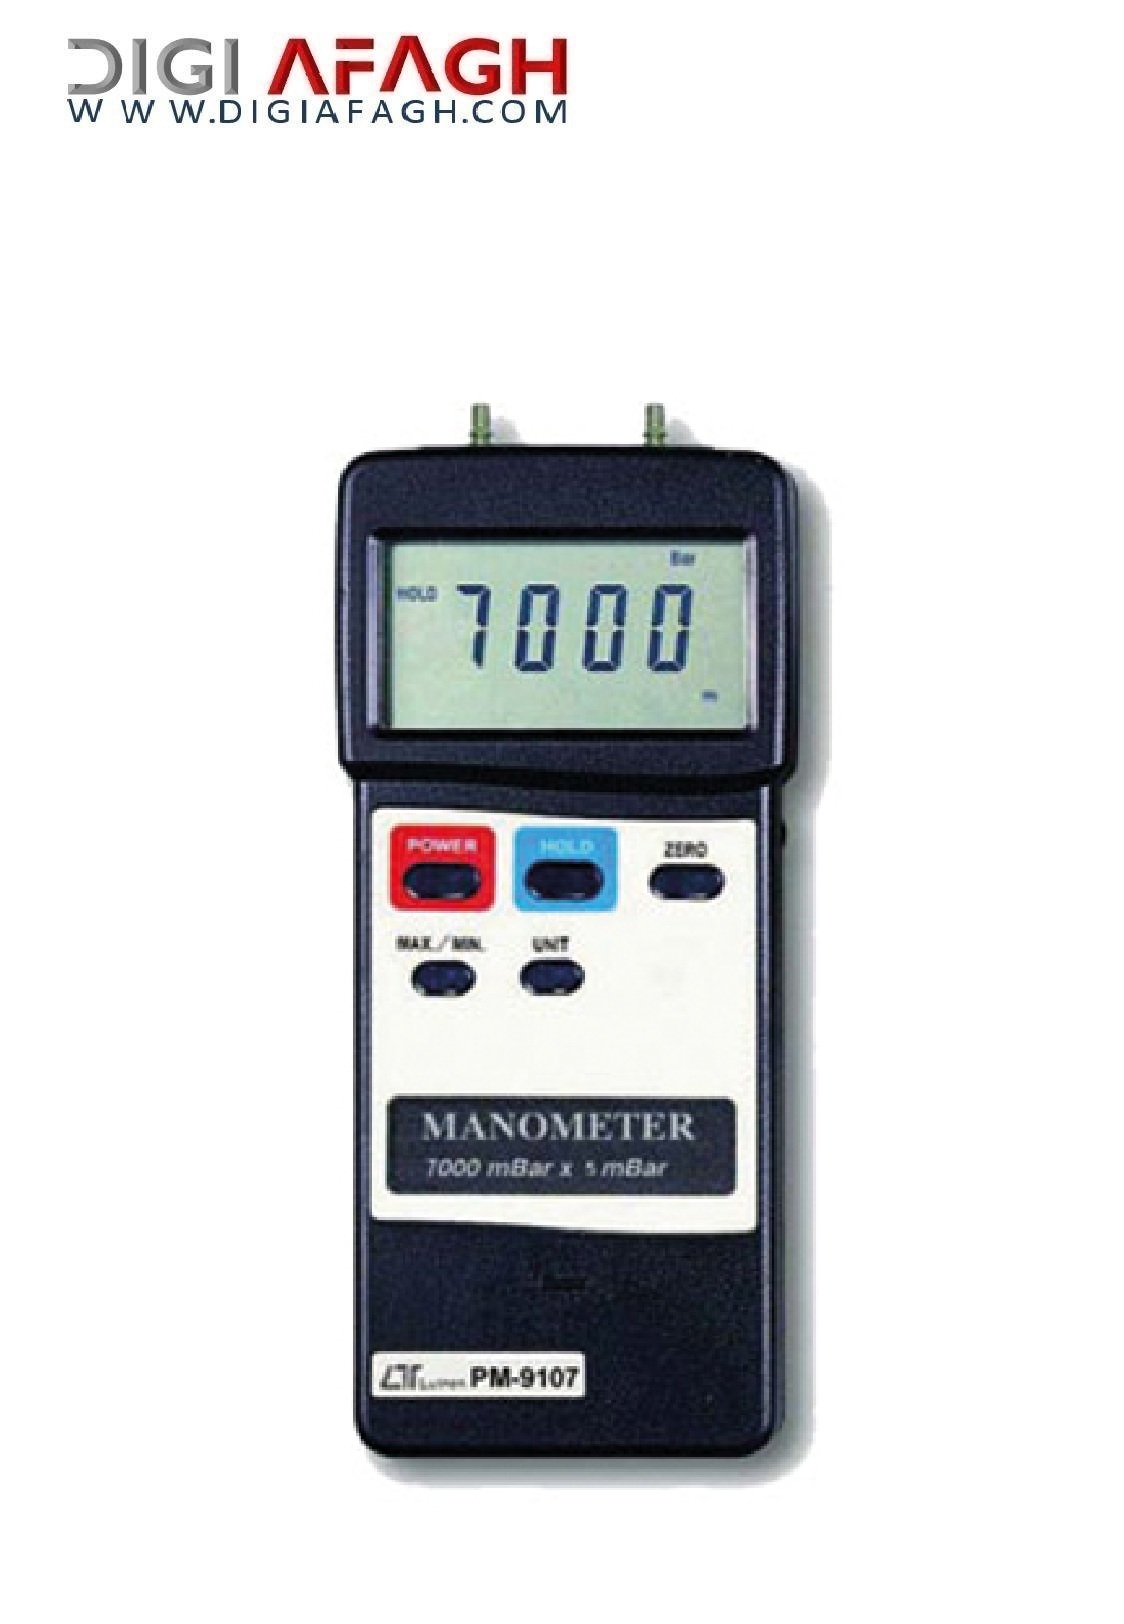 مانومتر دیجیتالی (فشار سنج تفاضلی) PM-9107